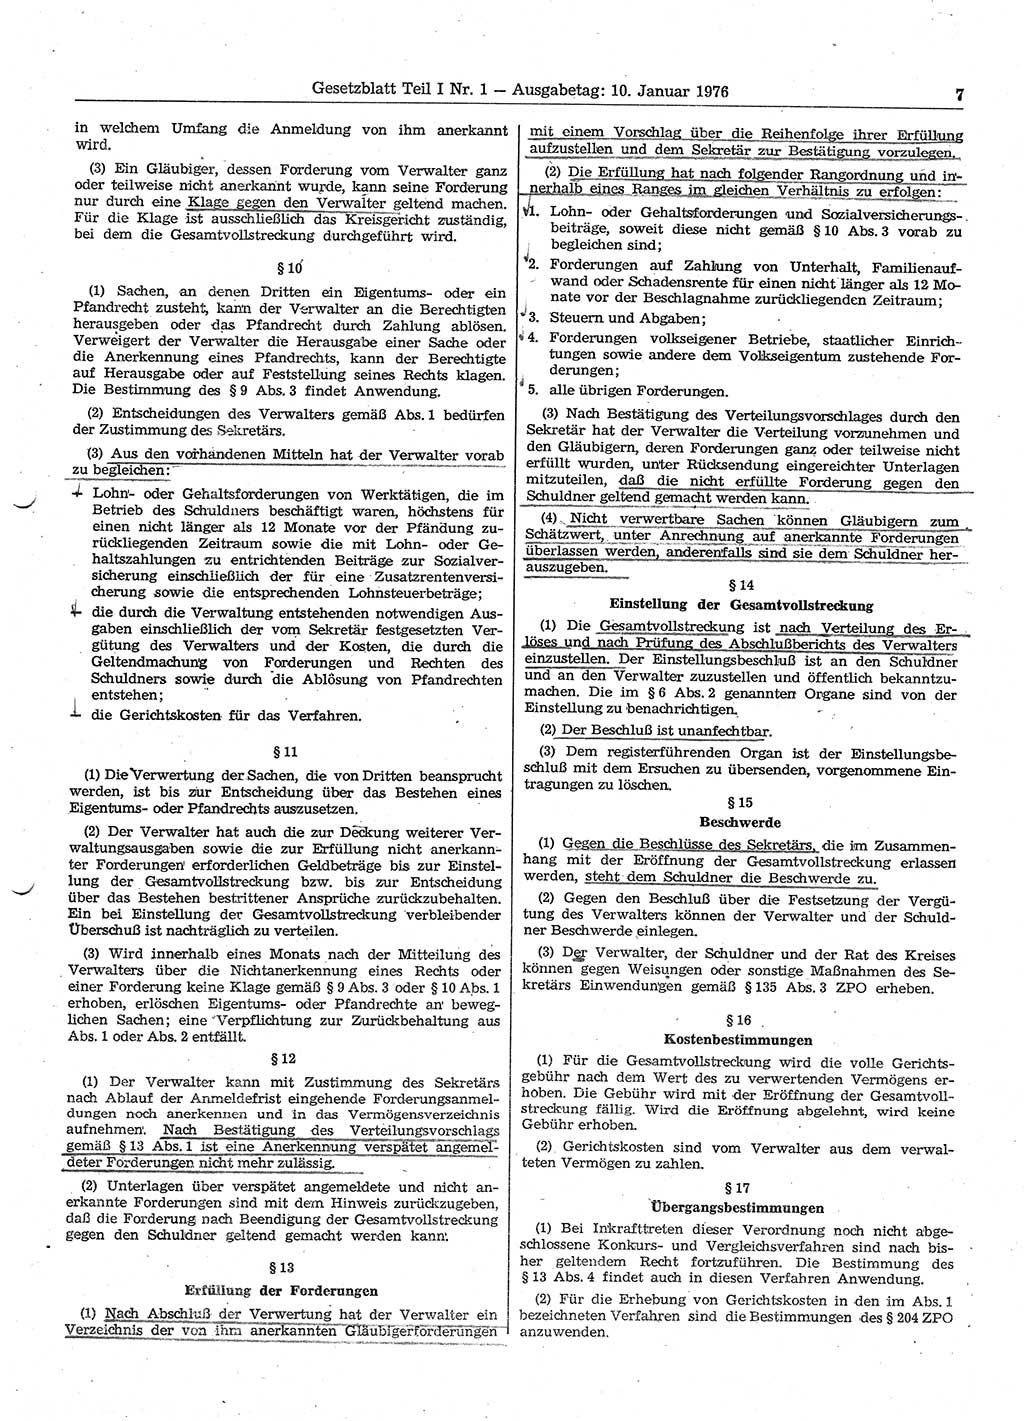 Gesetzblatt (GBl.) der Deutschen Demokratischen Republik (DDR) Teil Ⅰ 1976, Seite 7 (GBl. DDR Ⅰ 1976, S. 7)